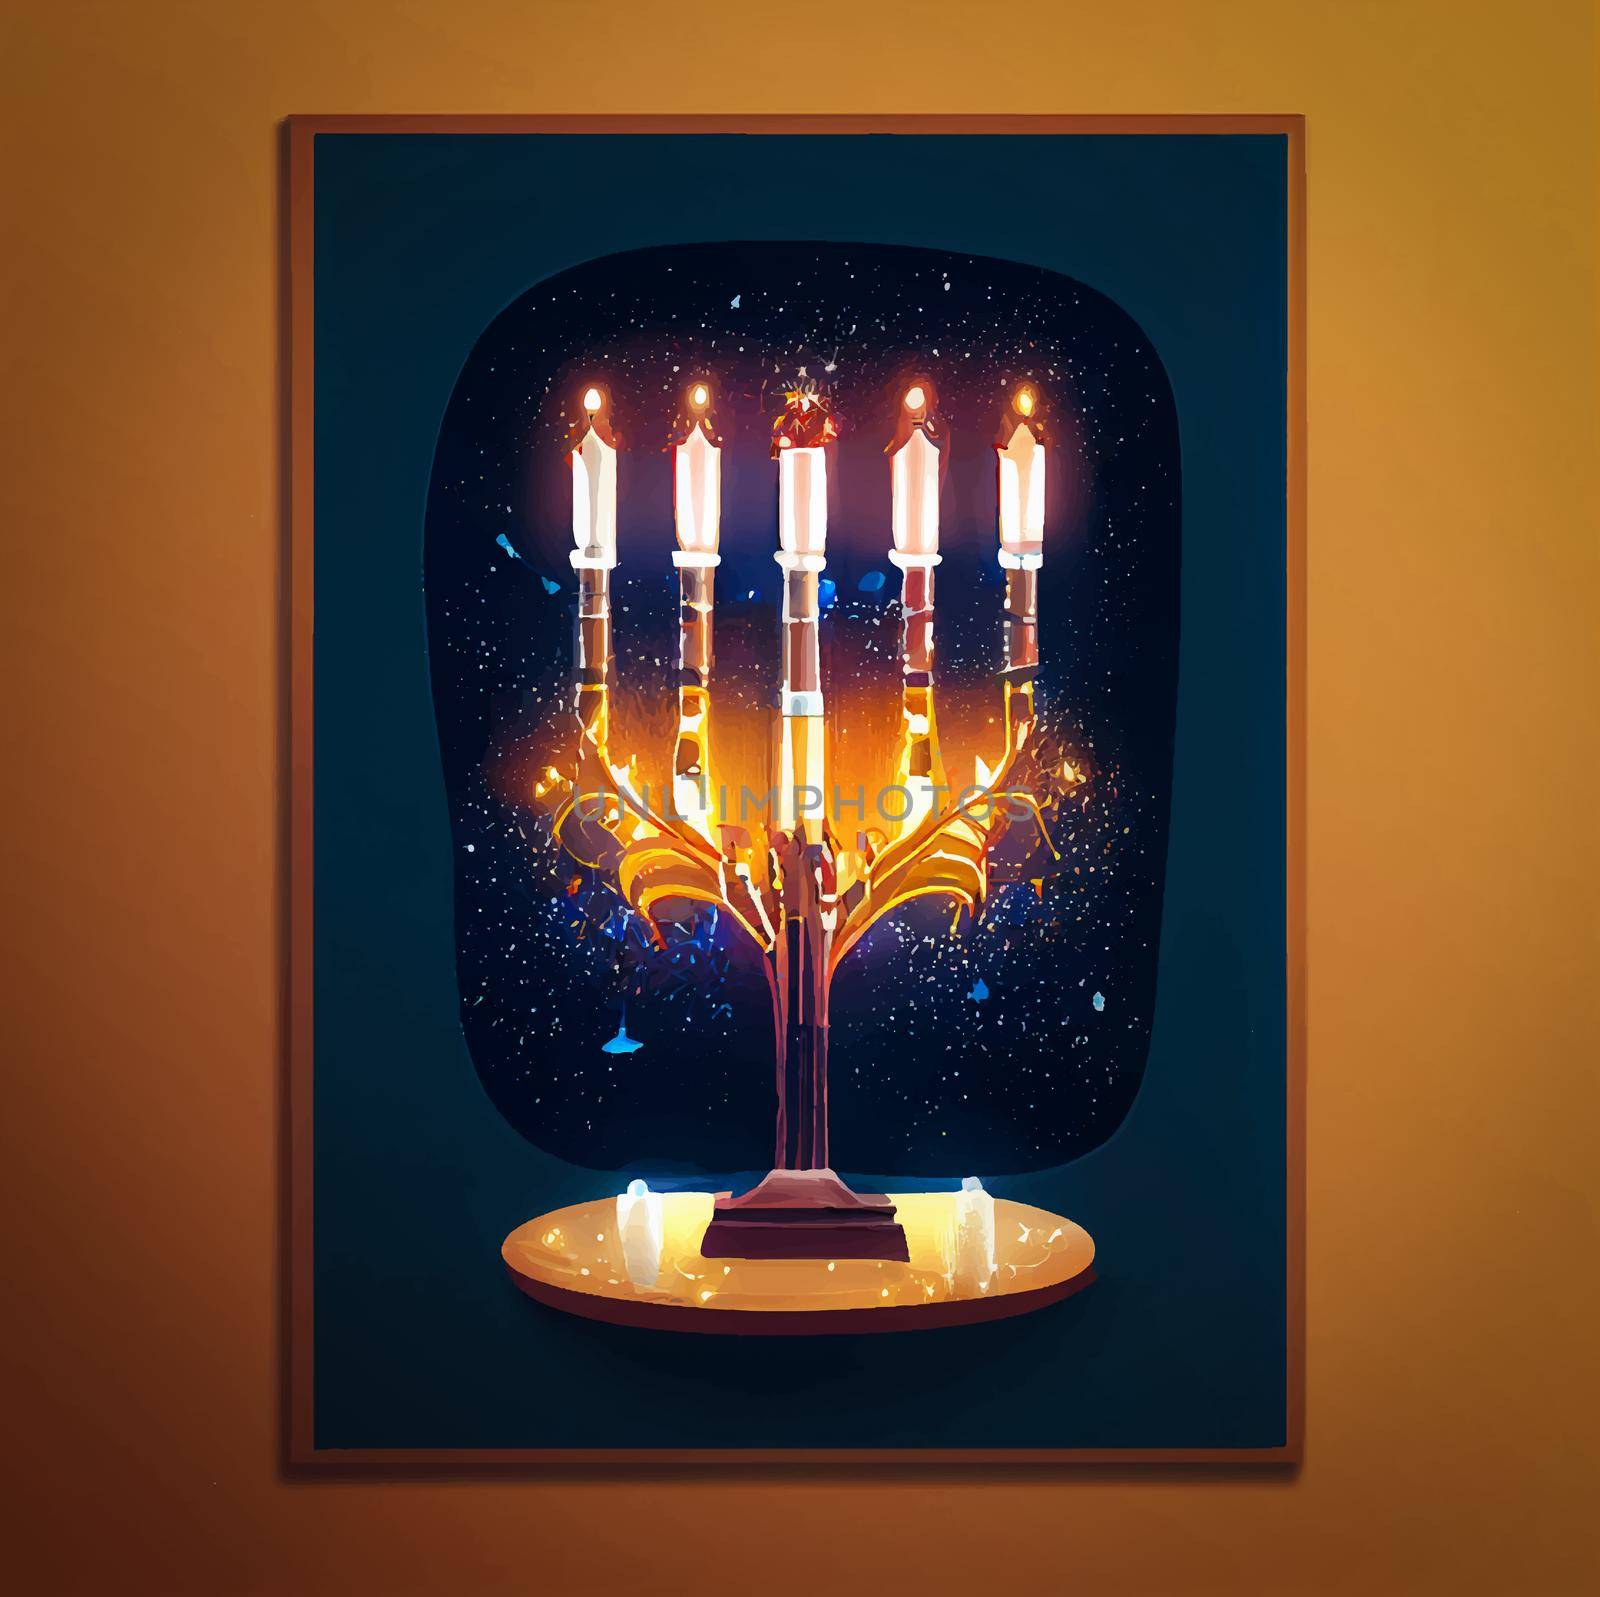 illustration of jewish holiday Hanukkah background with menorah and burning candles. Hanukkah celebration